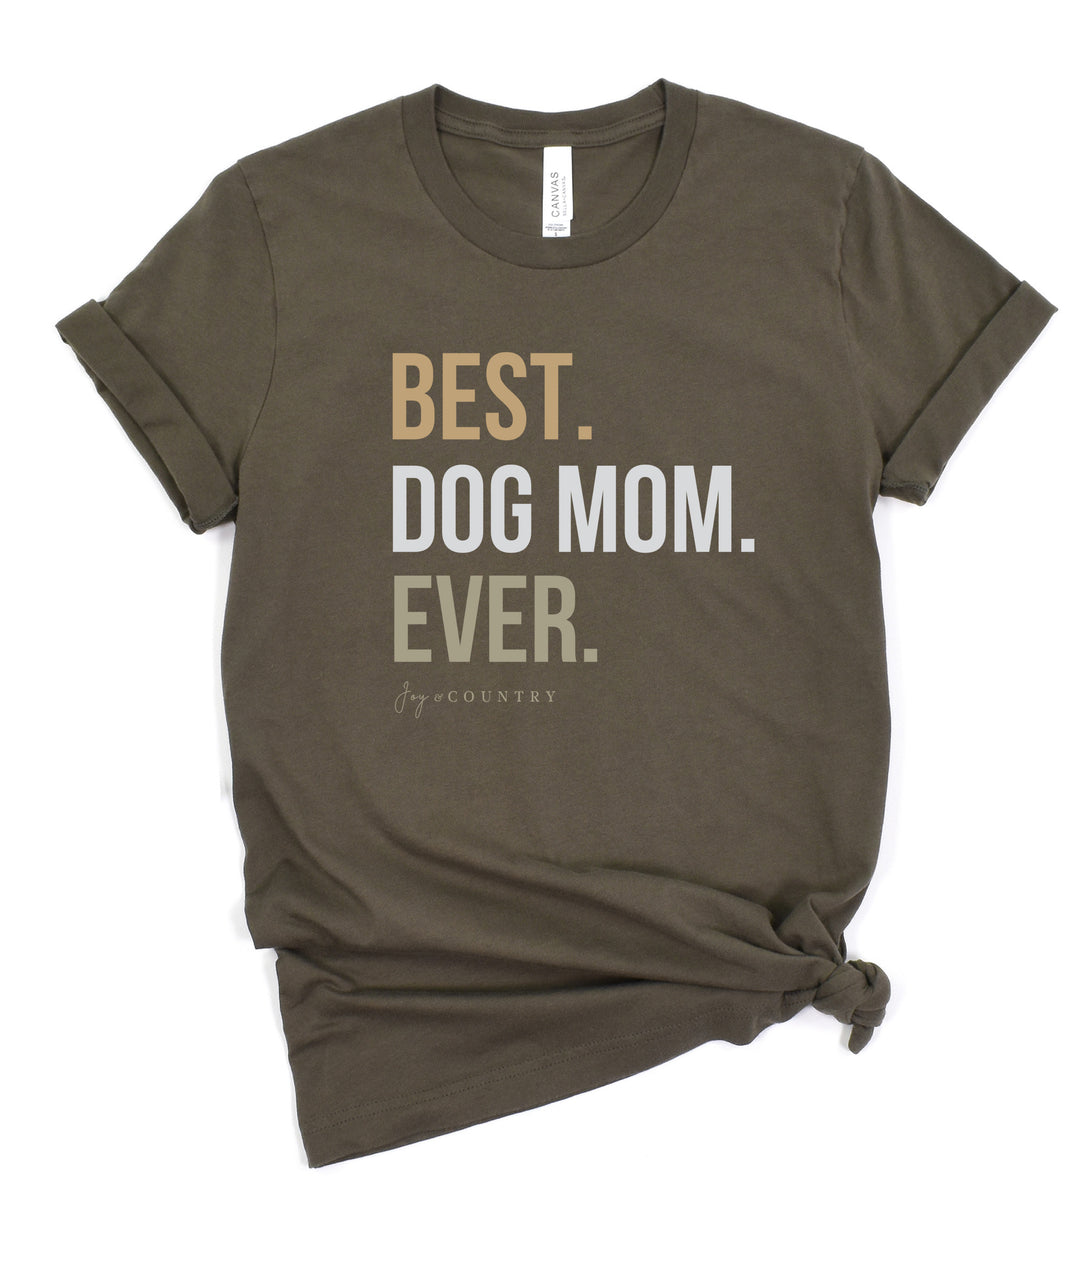 Best Dog Mom Ever - Unisex Crew-Neck Tee - Joy & Country